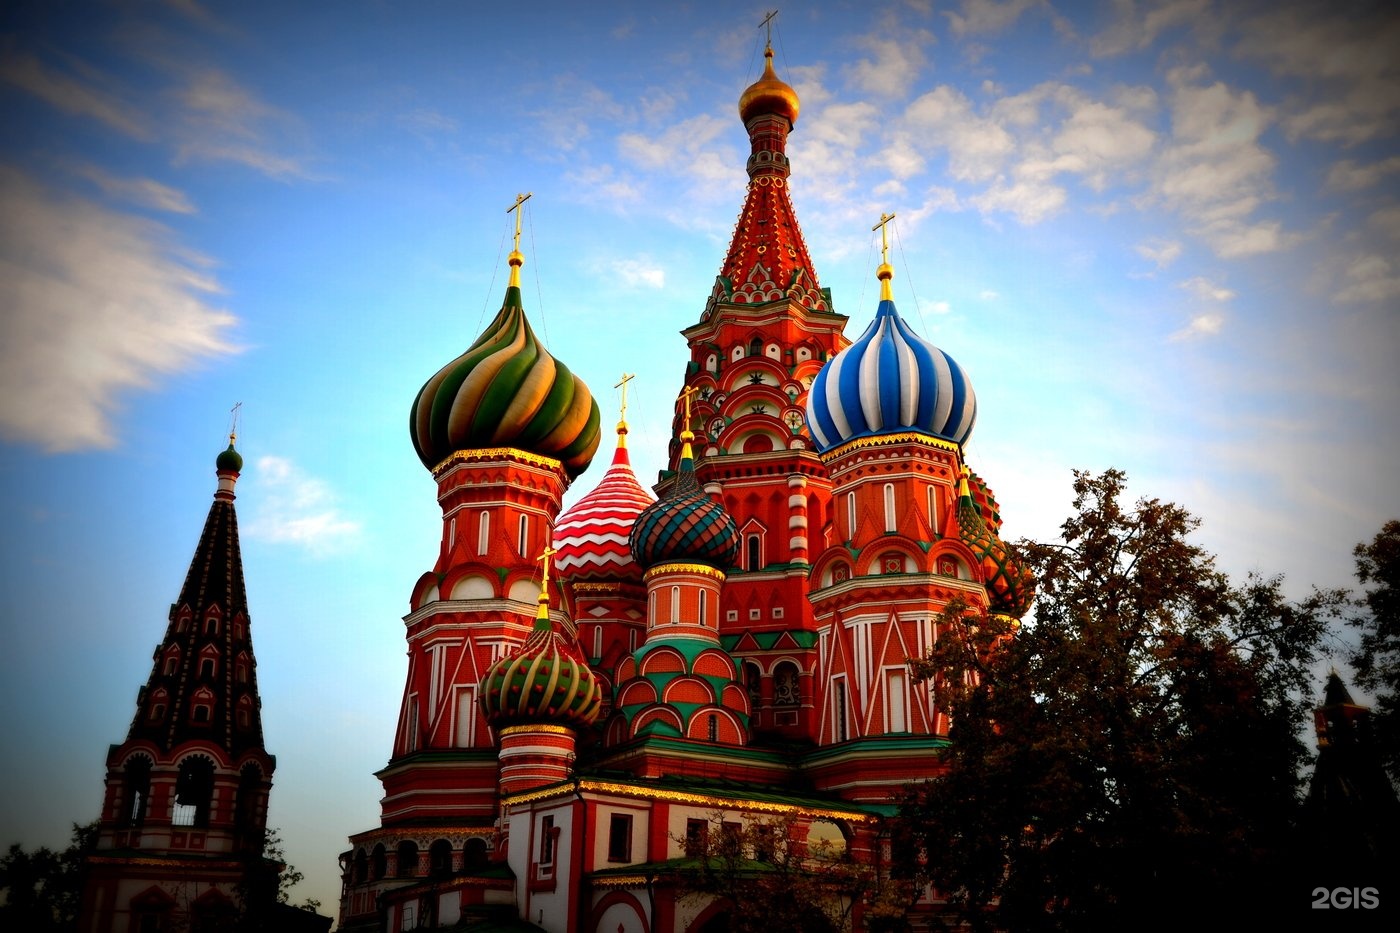 И соборов есть также. Храм Покрова (Василия Блаженного) в Москве. Храм Василия Блаженного Московского Кремля.